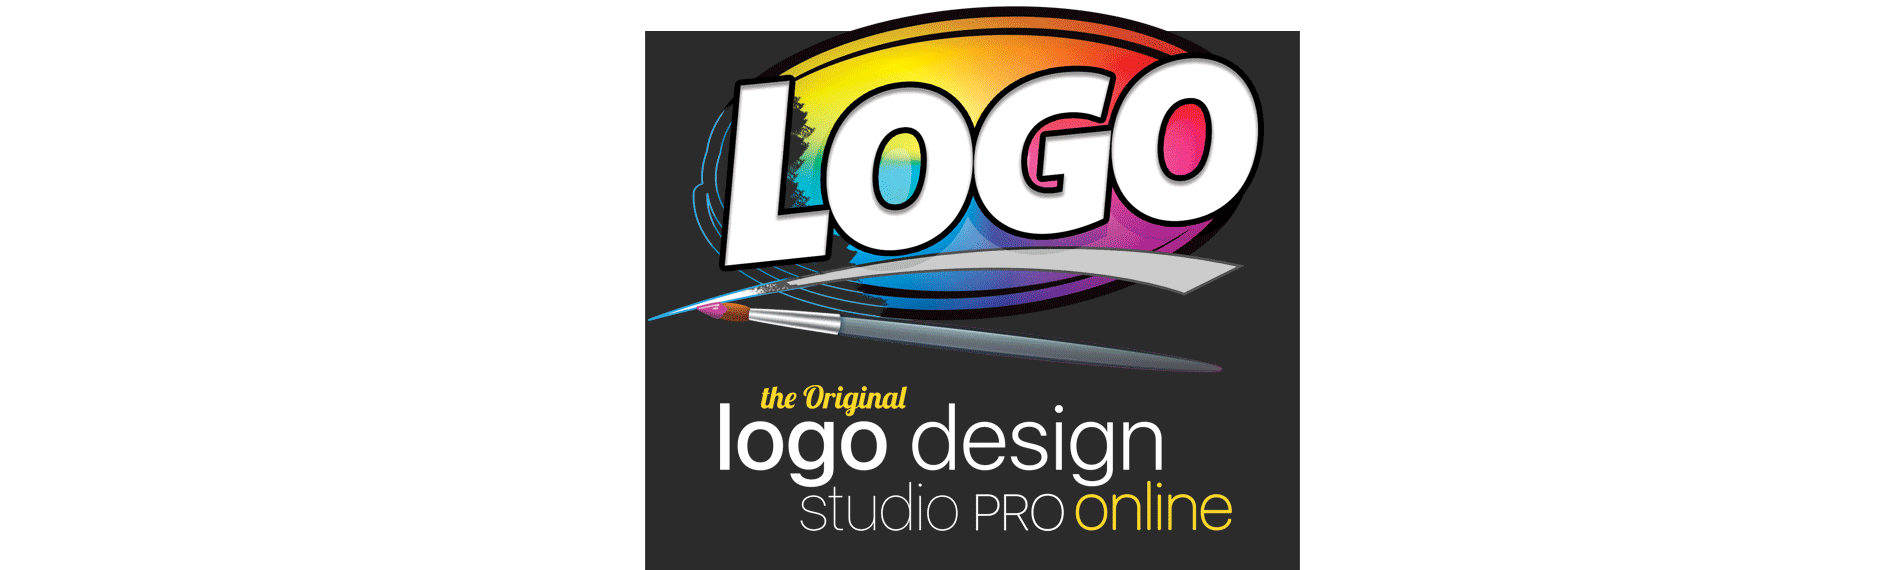 Macware Logo Design Studio Pro 1.5 mac